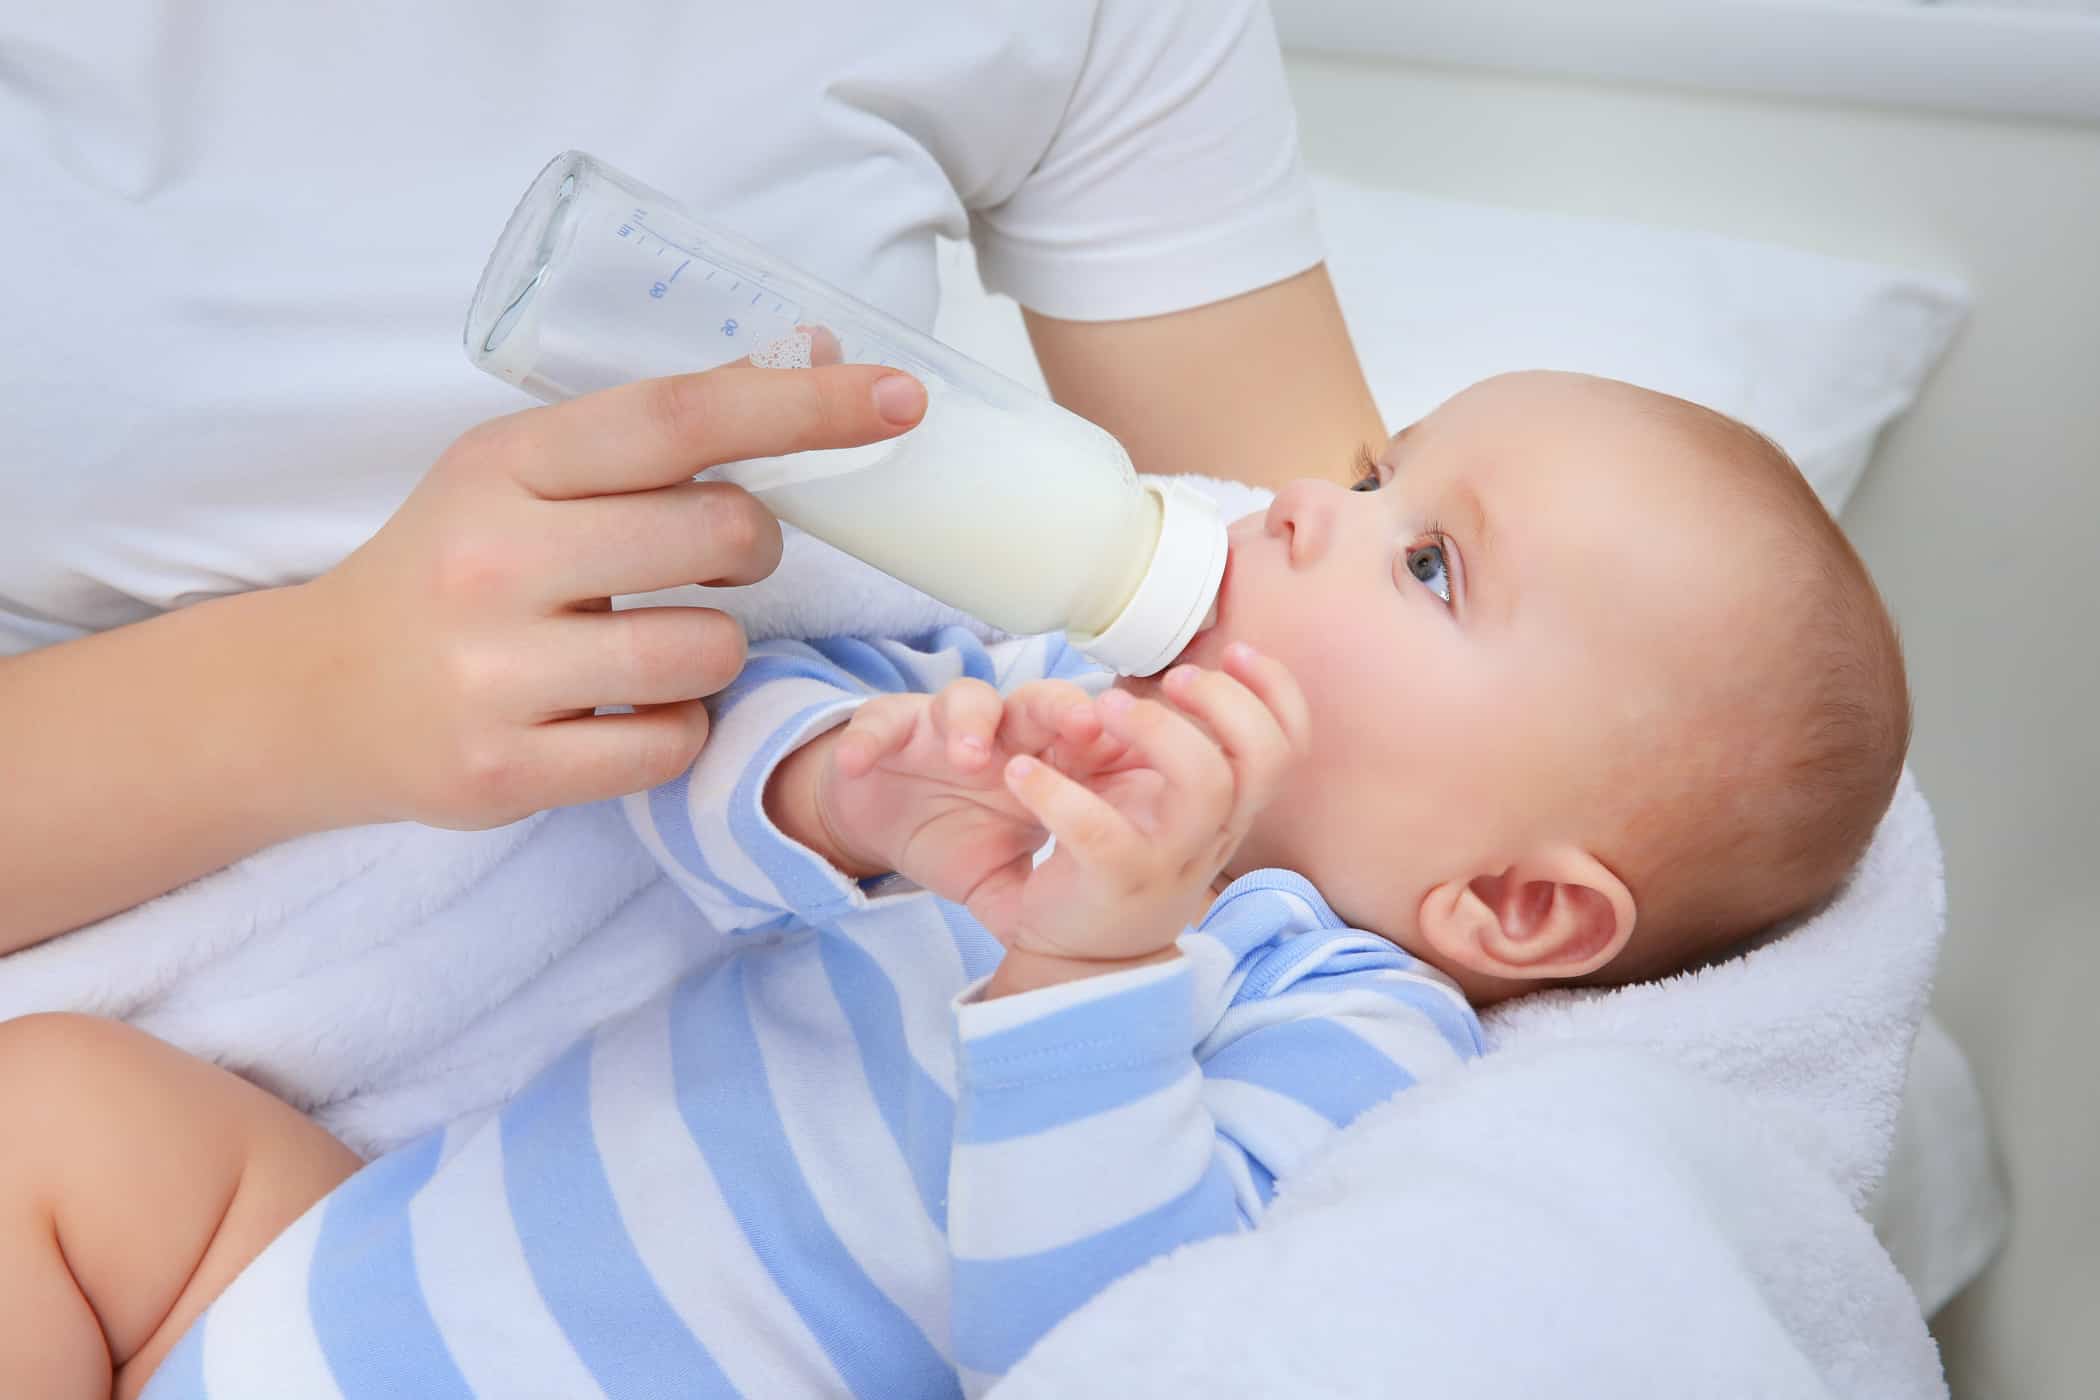 Susu Formula Untuk Bayi Biar Gemuk